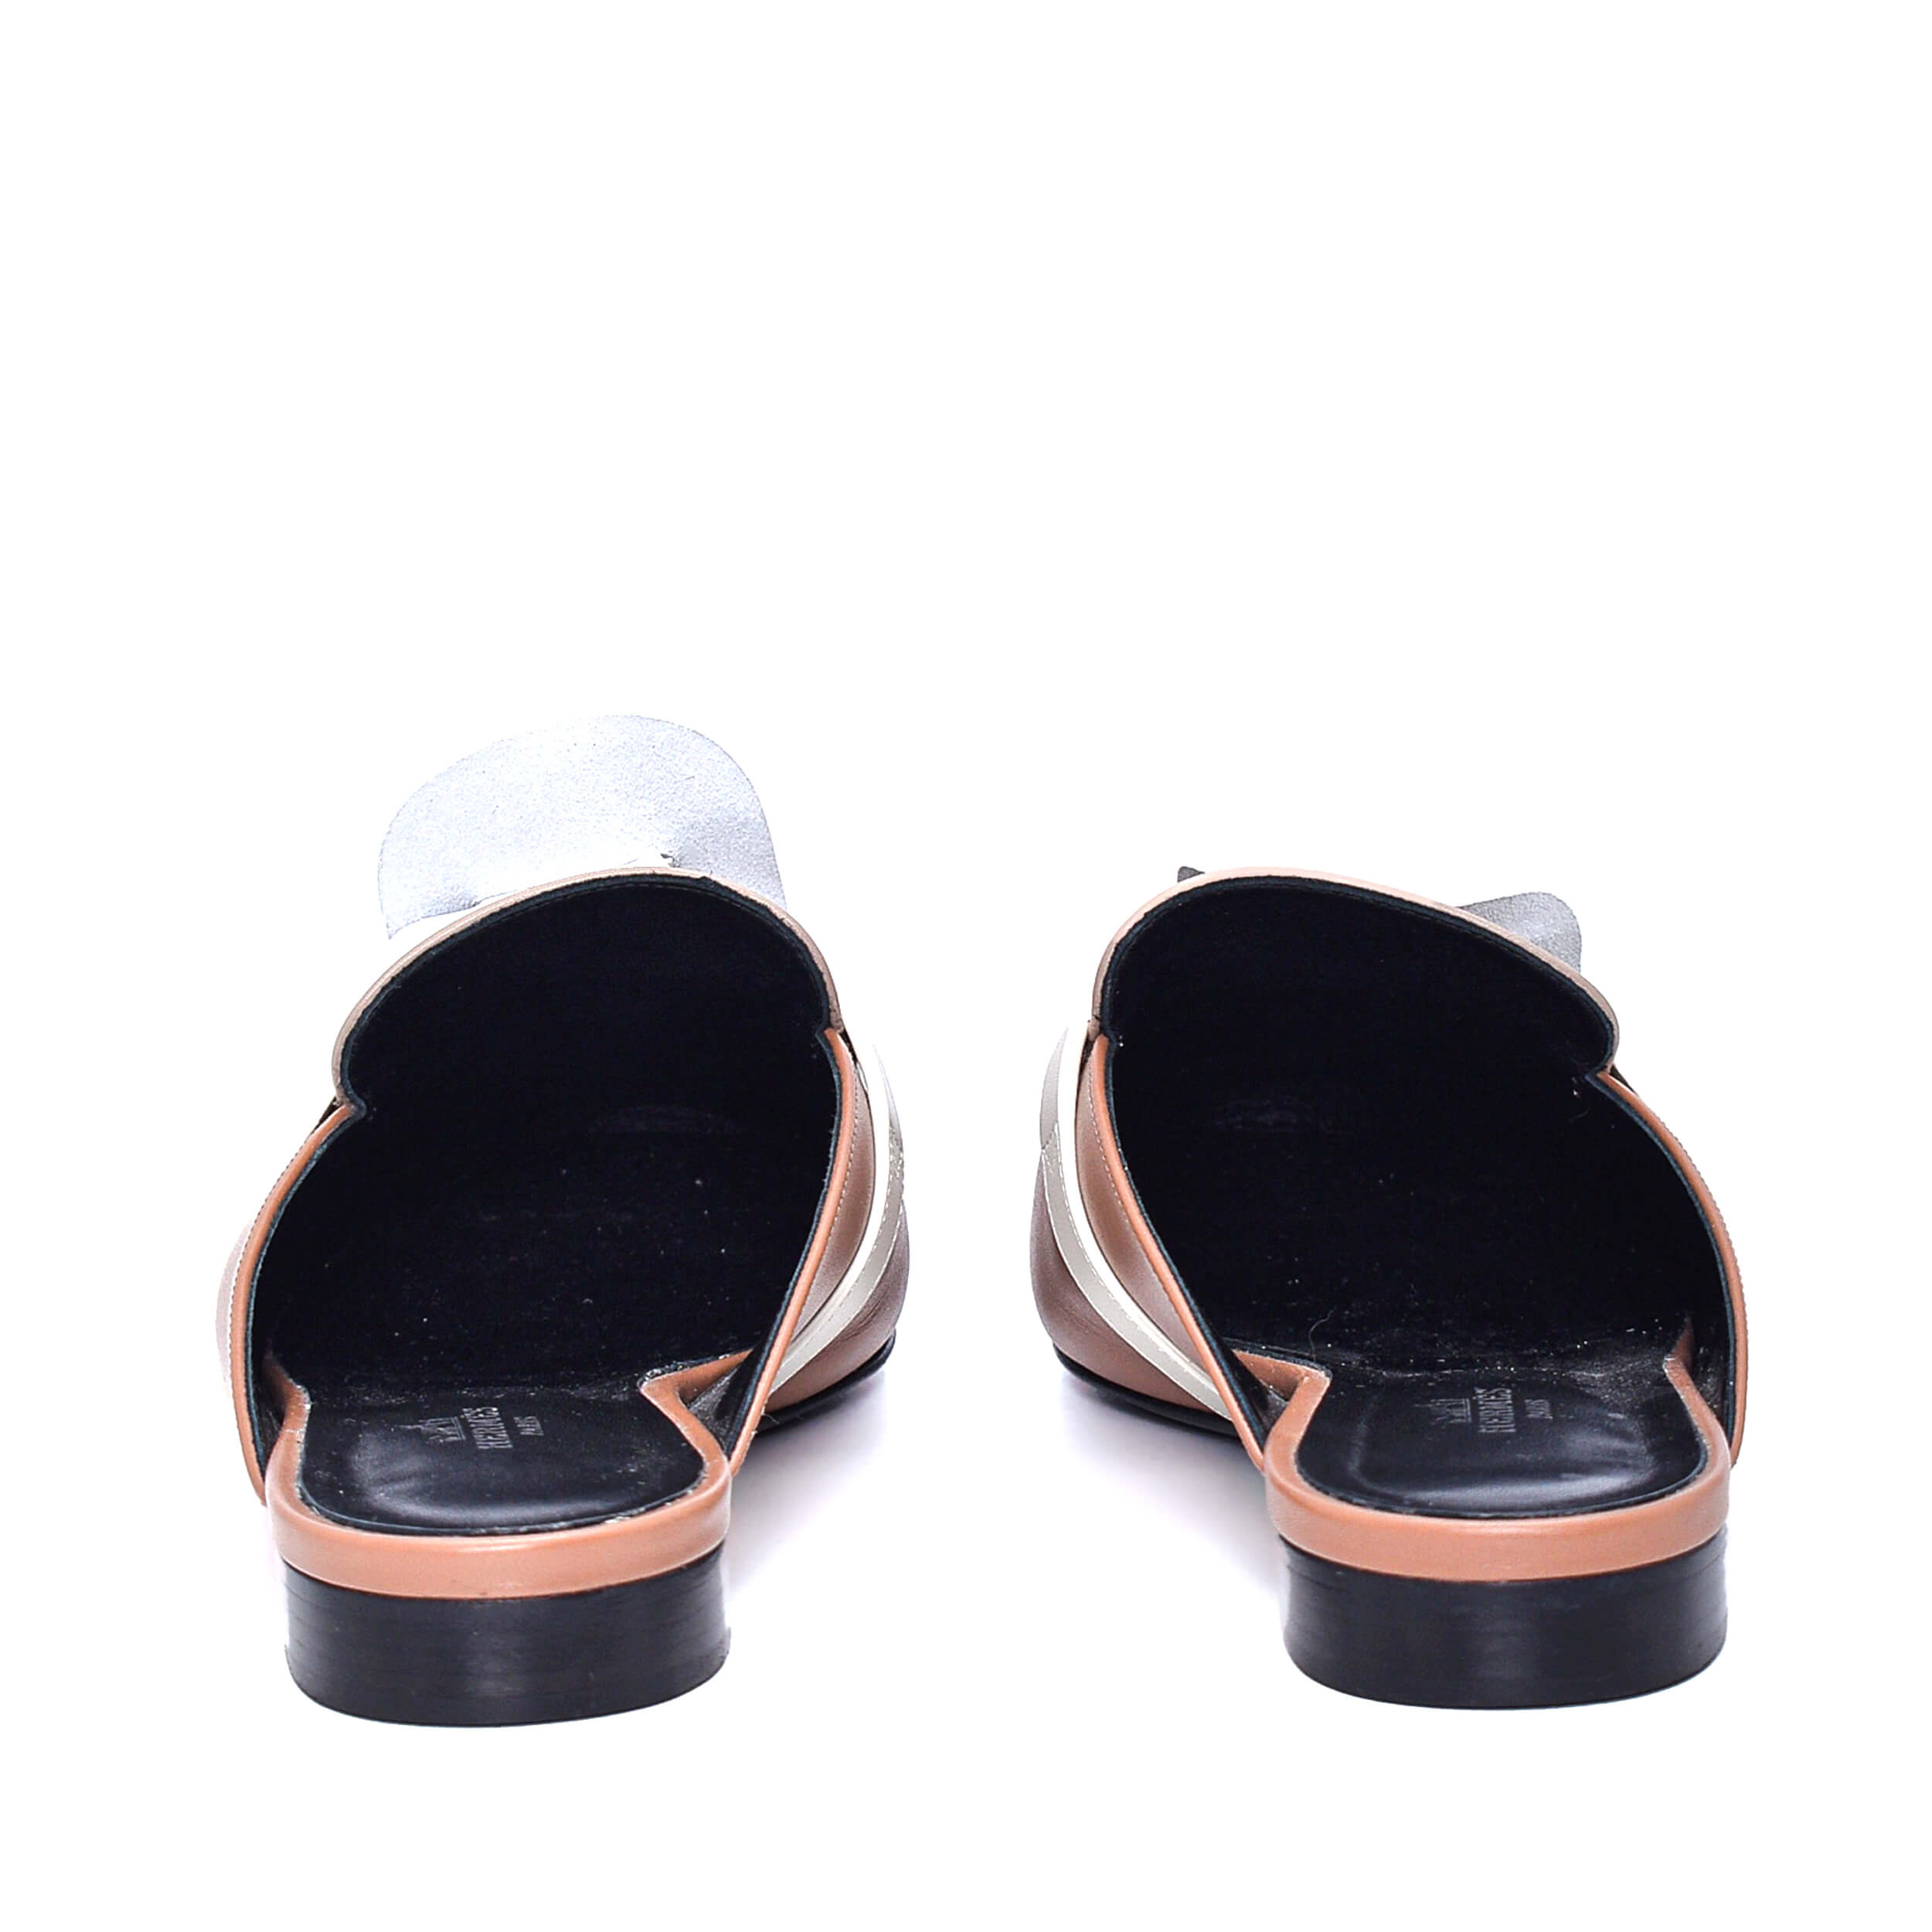 Hermes - Beige&Brown Leather Kelly Mule Sandals